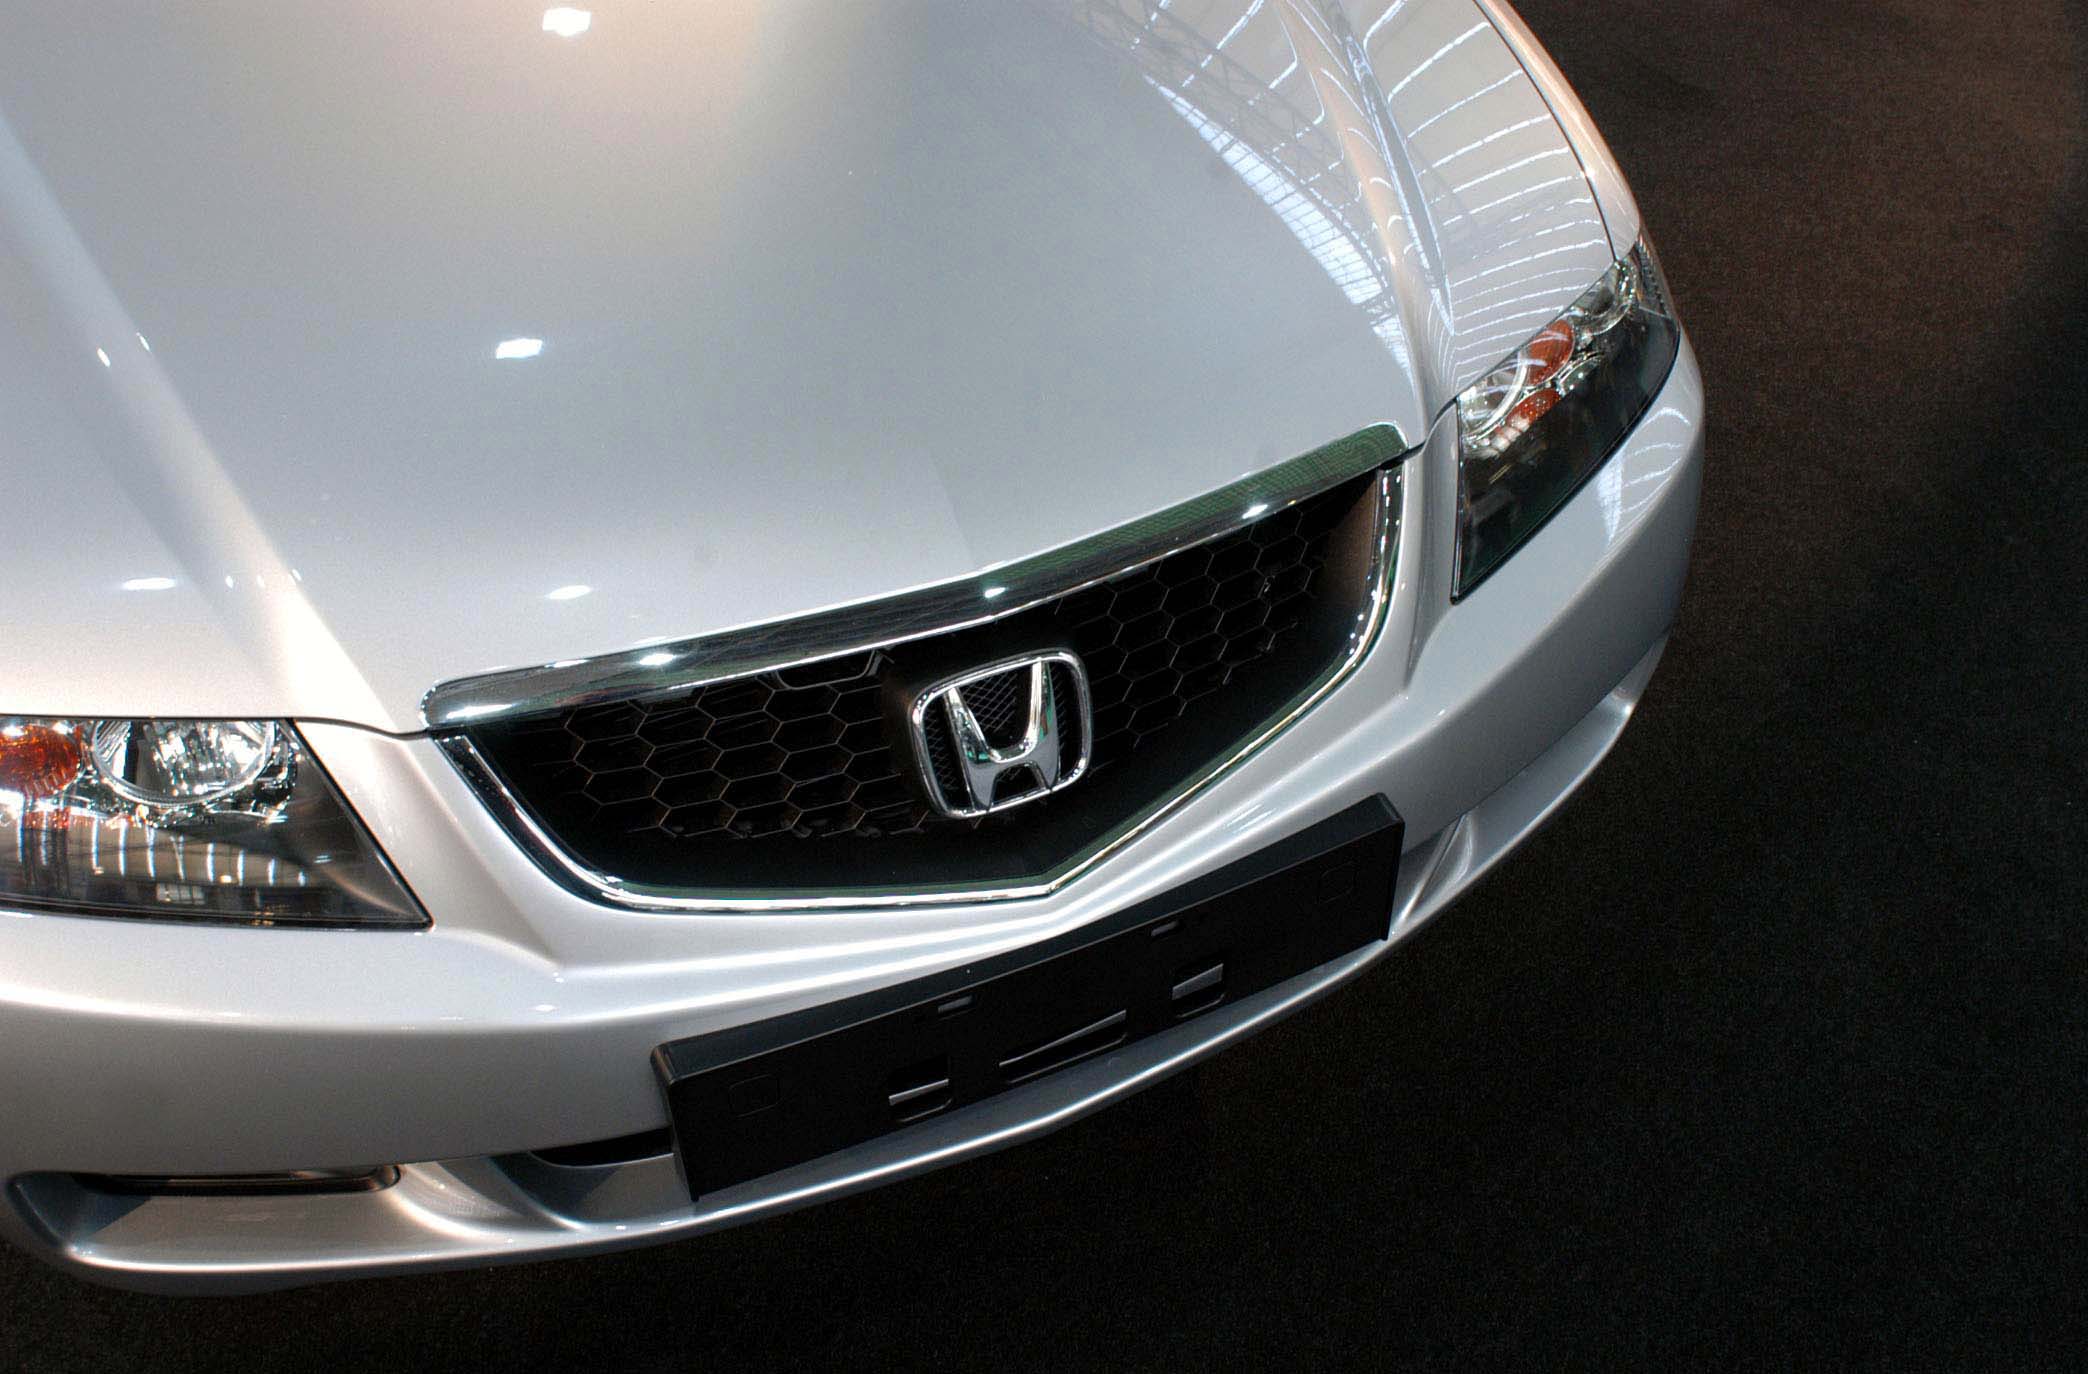 Honda nel mirino dell’NHTSA: aperta una richiesta di richiamo per oltre 120.000 veicoli